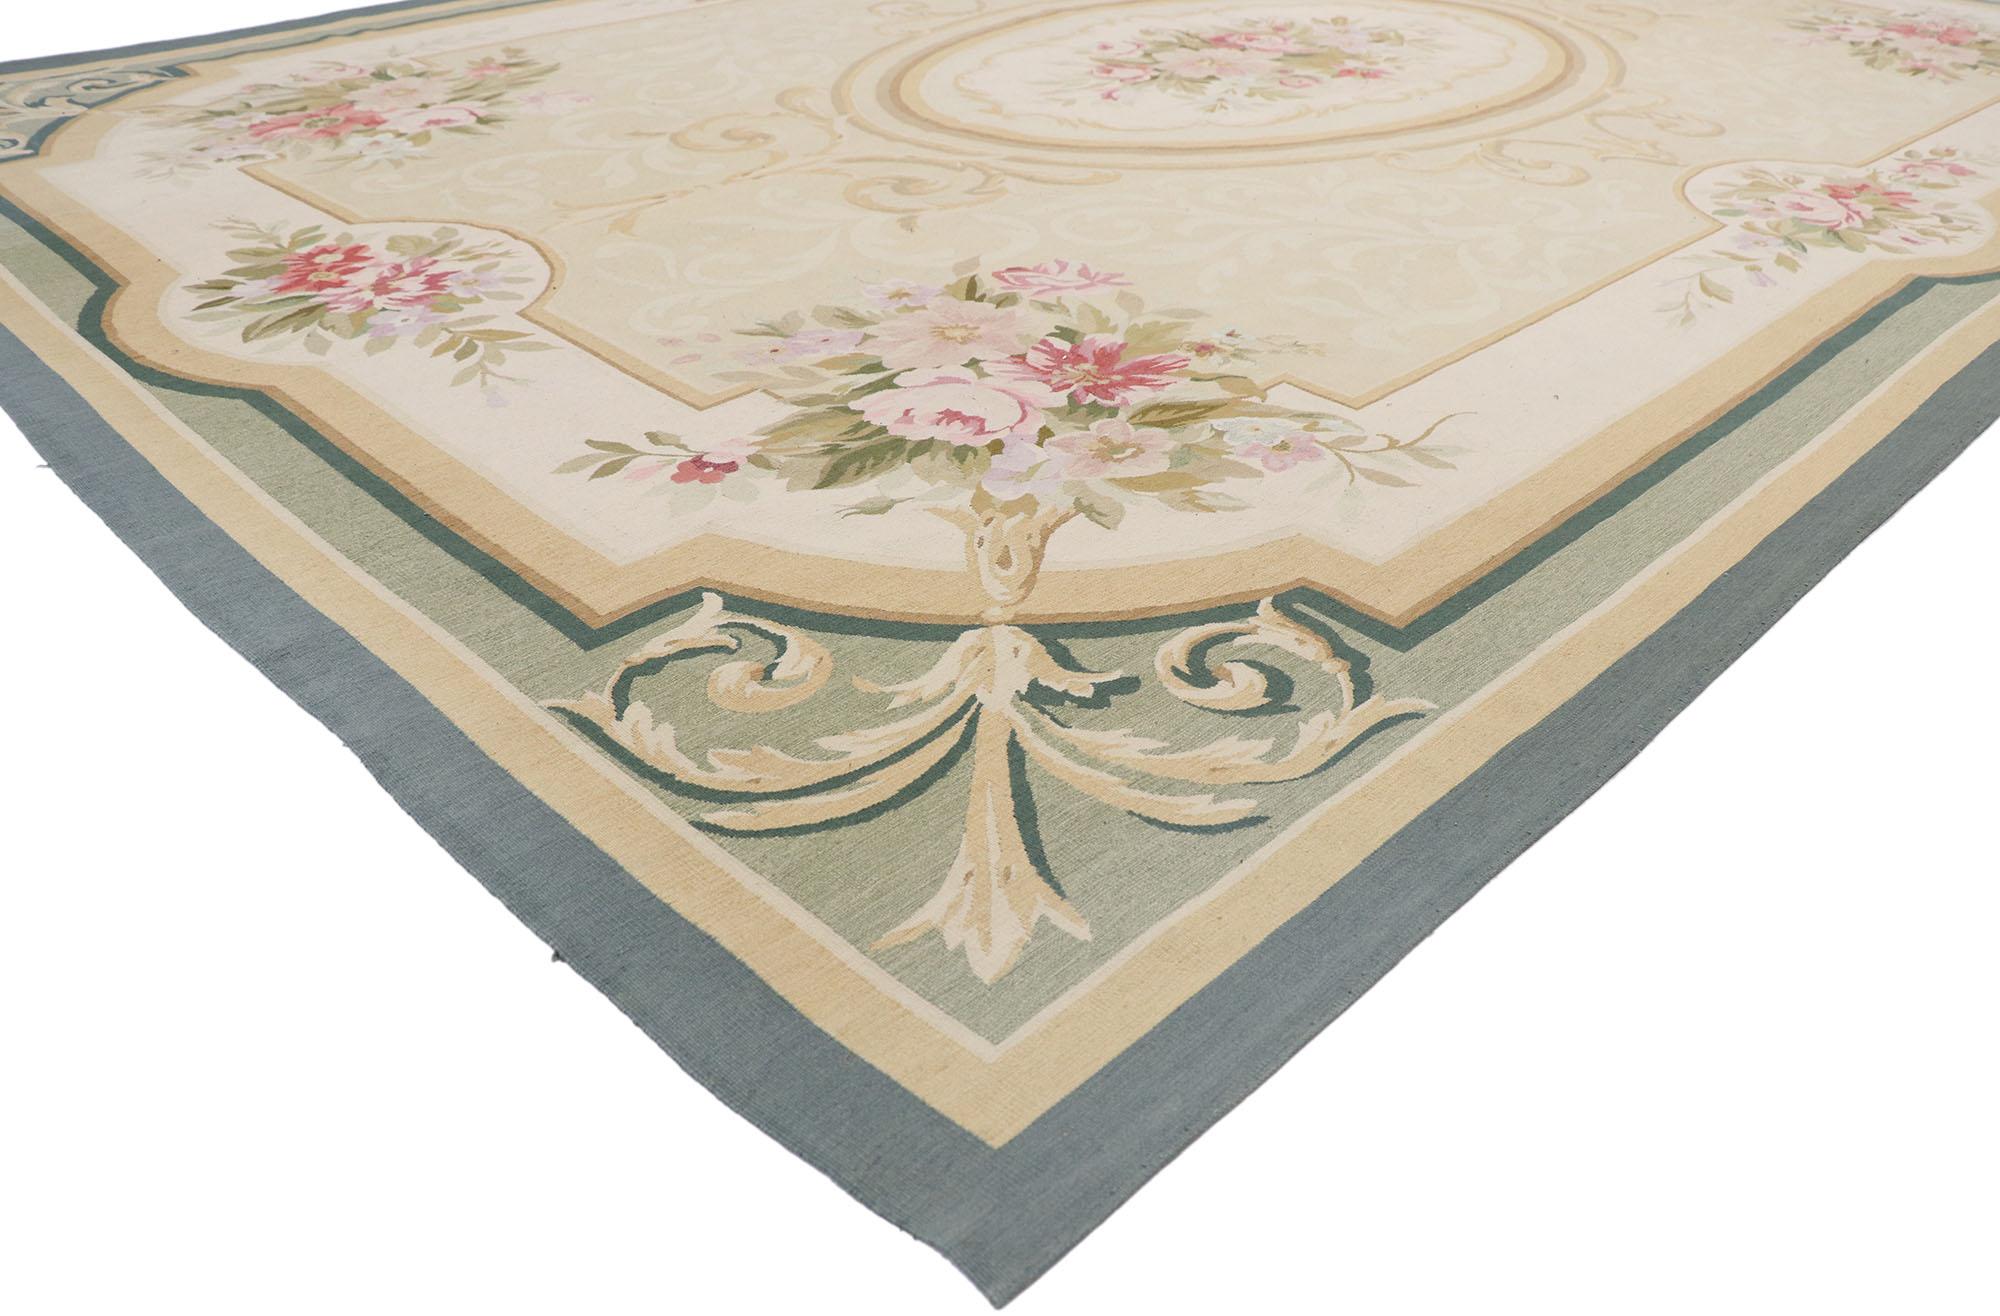 77610, tapis d'Aubusson français vintage de style Regal Romantic Rococo. Ce tapis d'Aubusson français vintage en laine tissée à la main est un exemple classique du romantisme français. Il a connu une floraison de techniques et de tendances depuis le